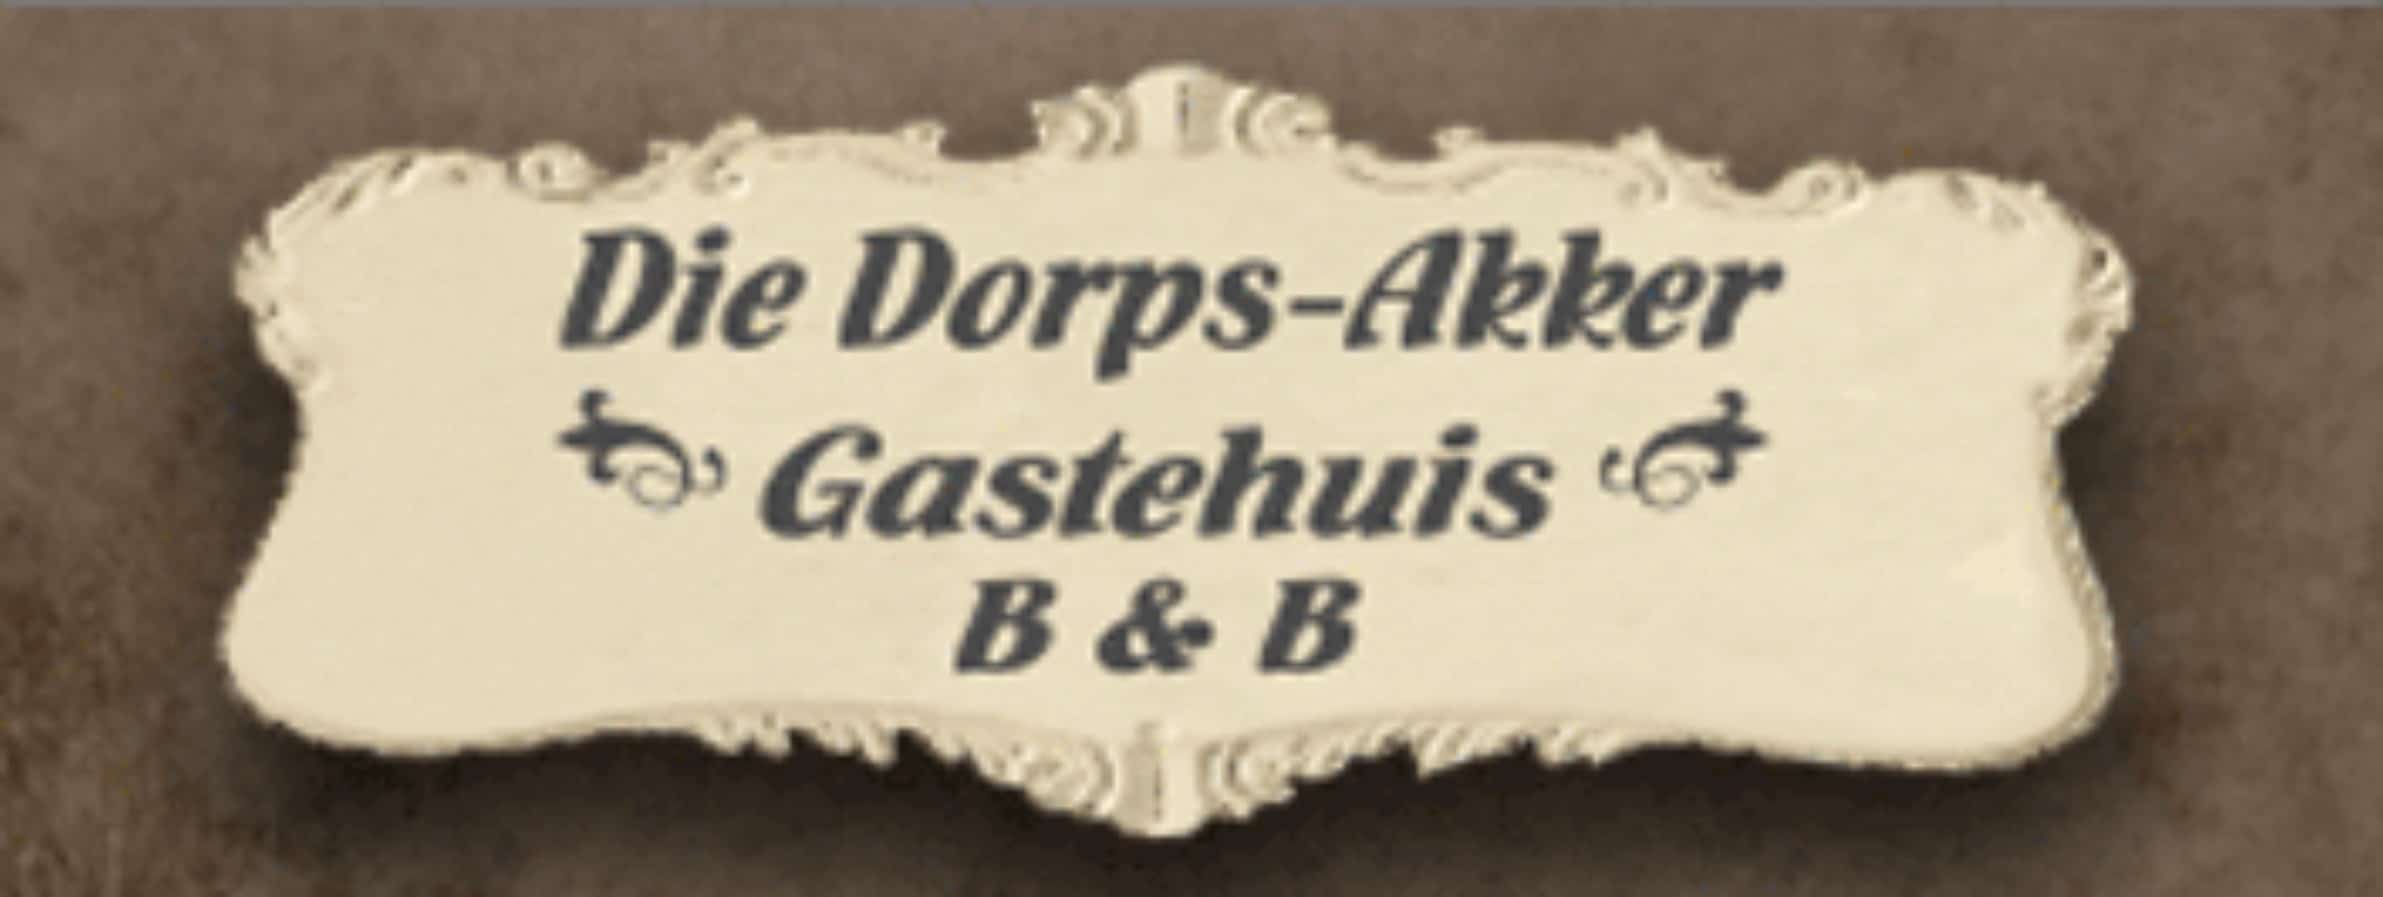 Die Dorps-Akker Guest House Heidelberg 3